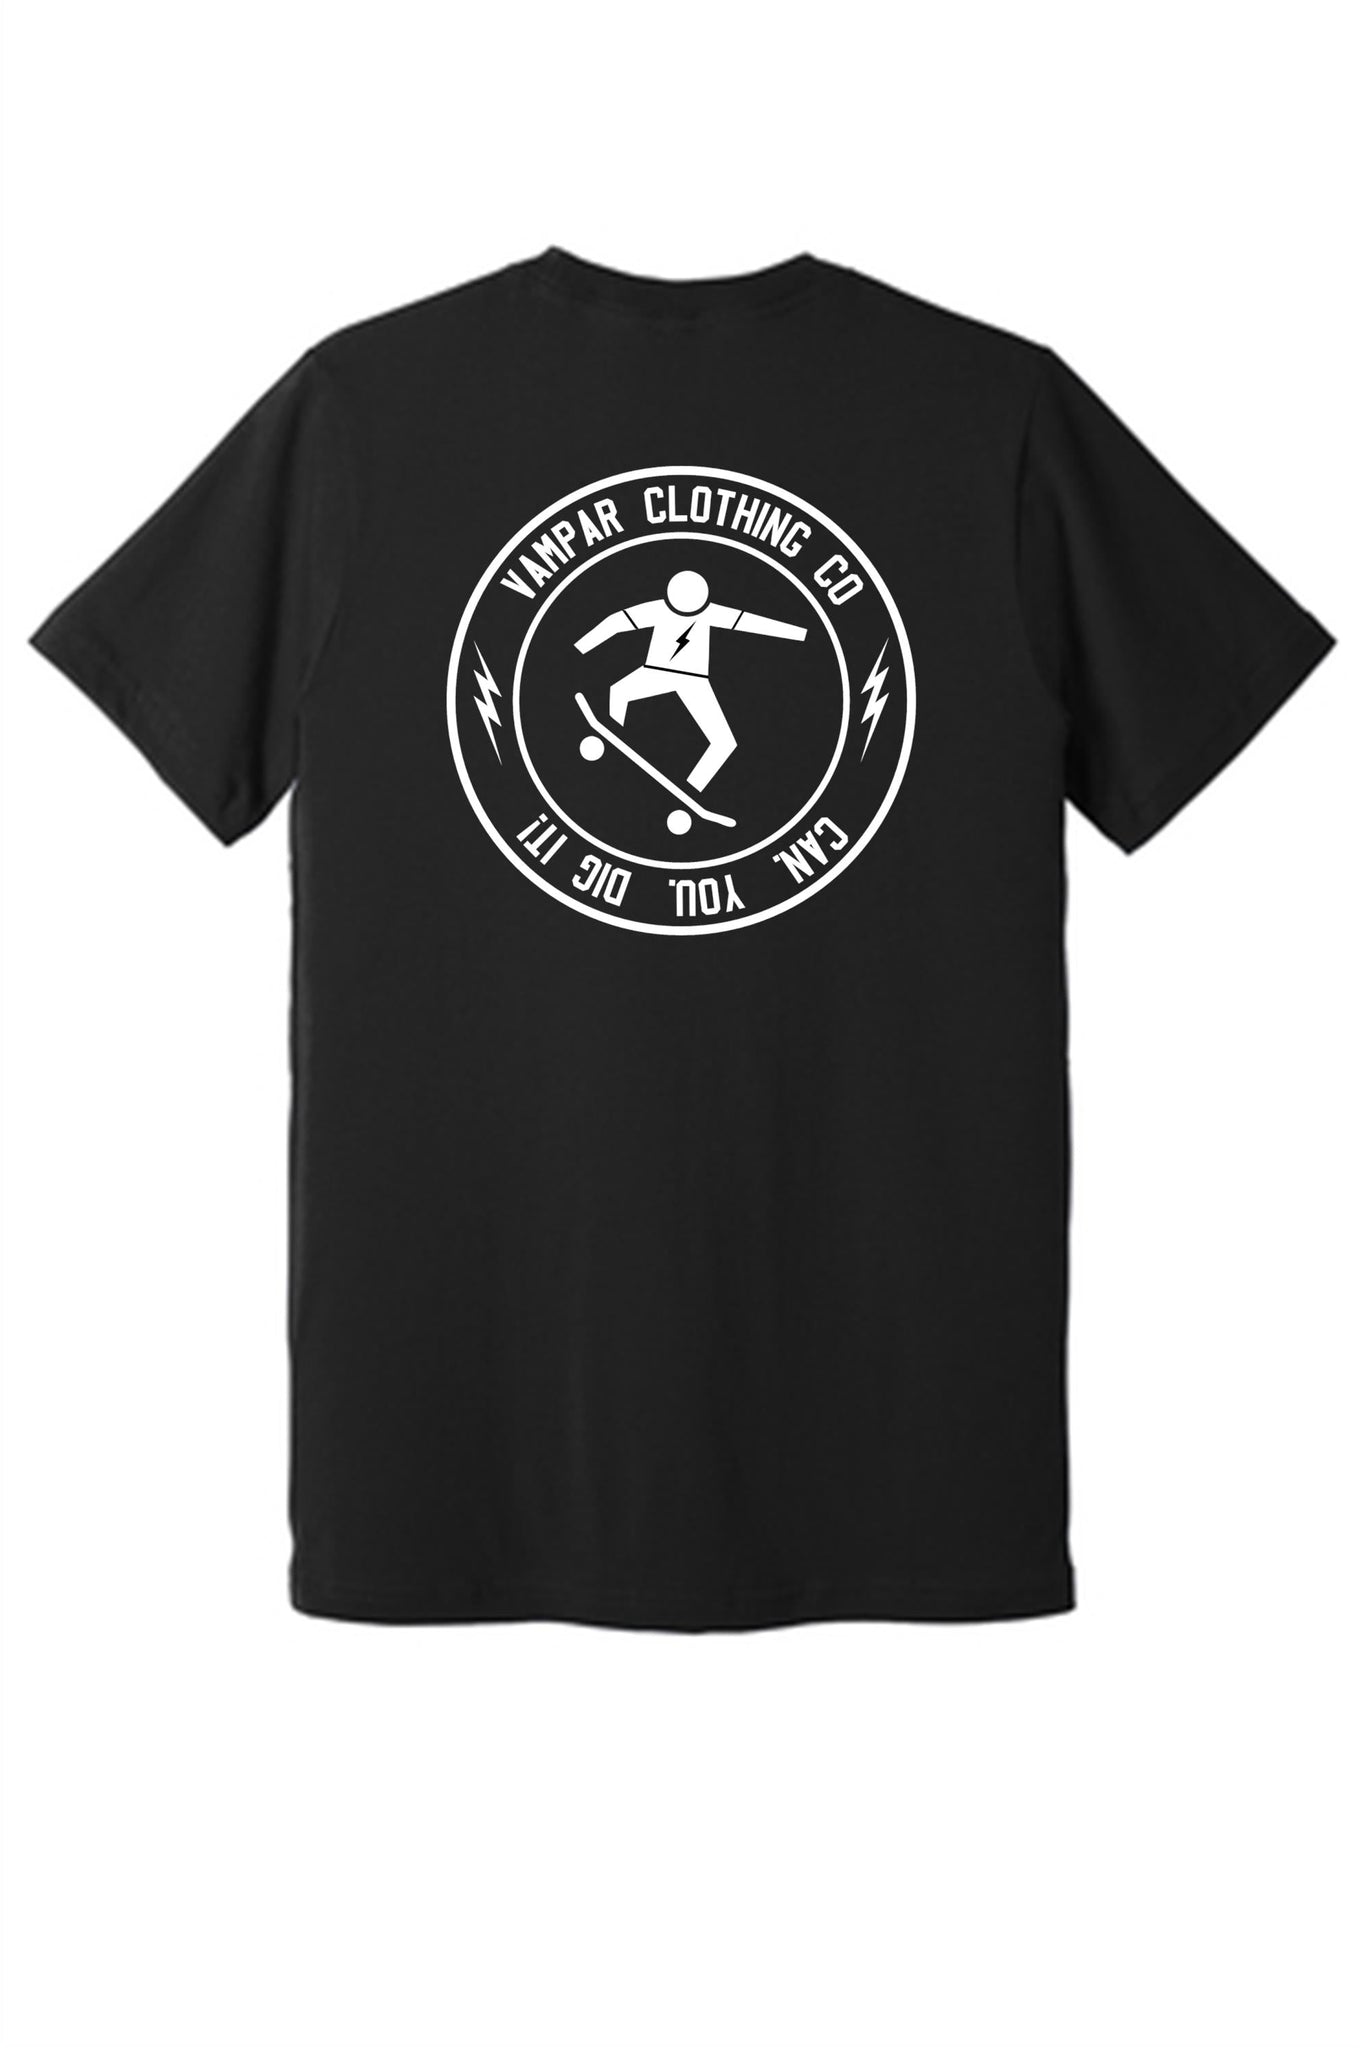 Vampar Skate Logo Youth T-Shirt